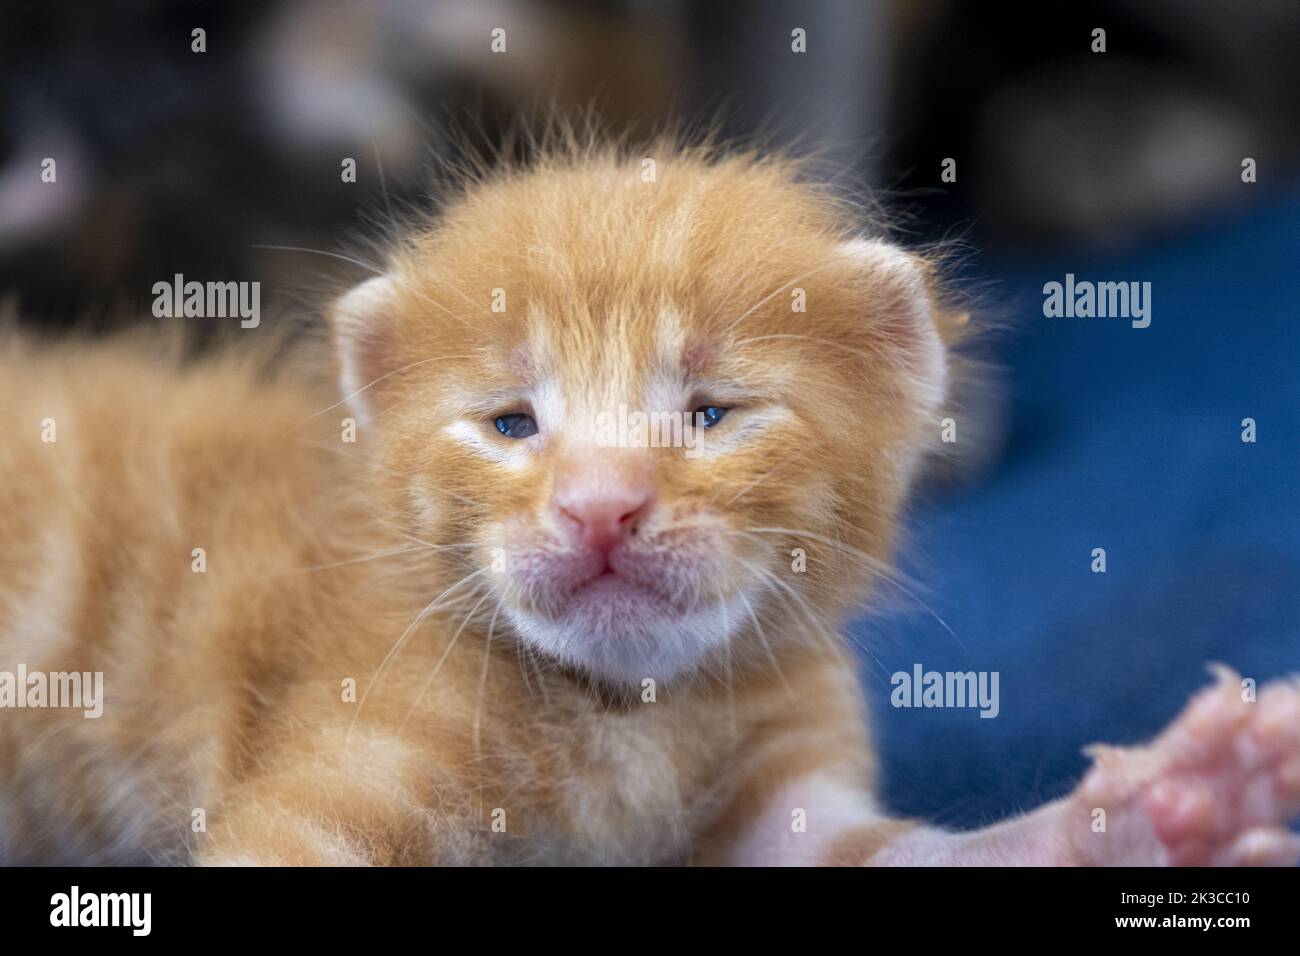 Neugeborene orange gestromte Katze Stretching, Kätzchen Konzept, halb offene Augen Neugeborene Katze legt sich, niedliche kleine Kätzchen Konzept, lustige rote Babykatze Stockfoto